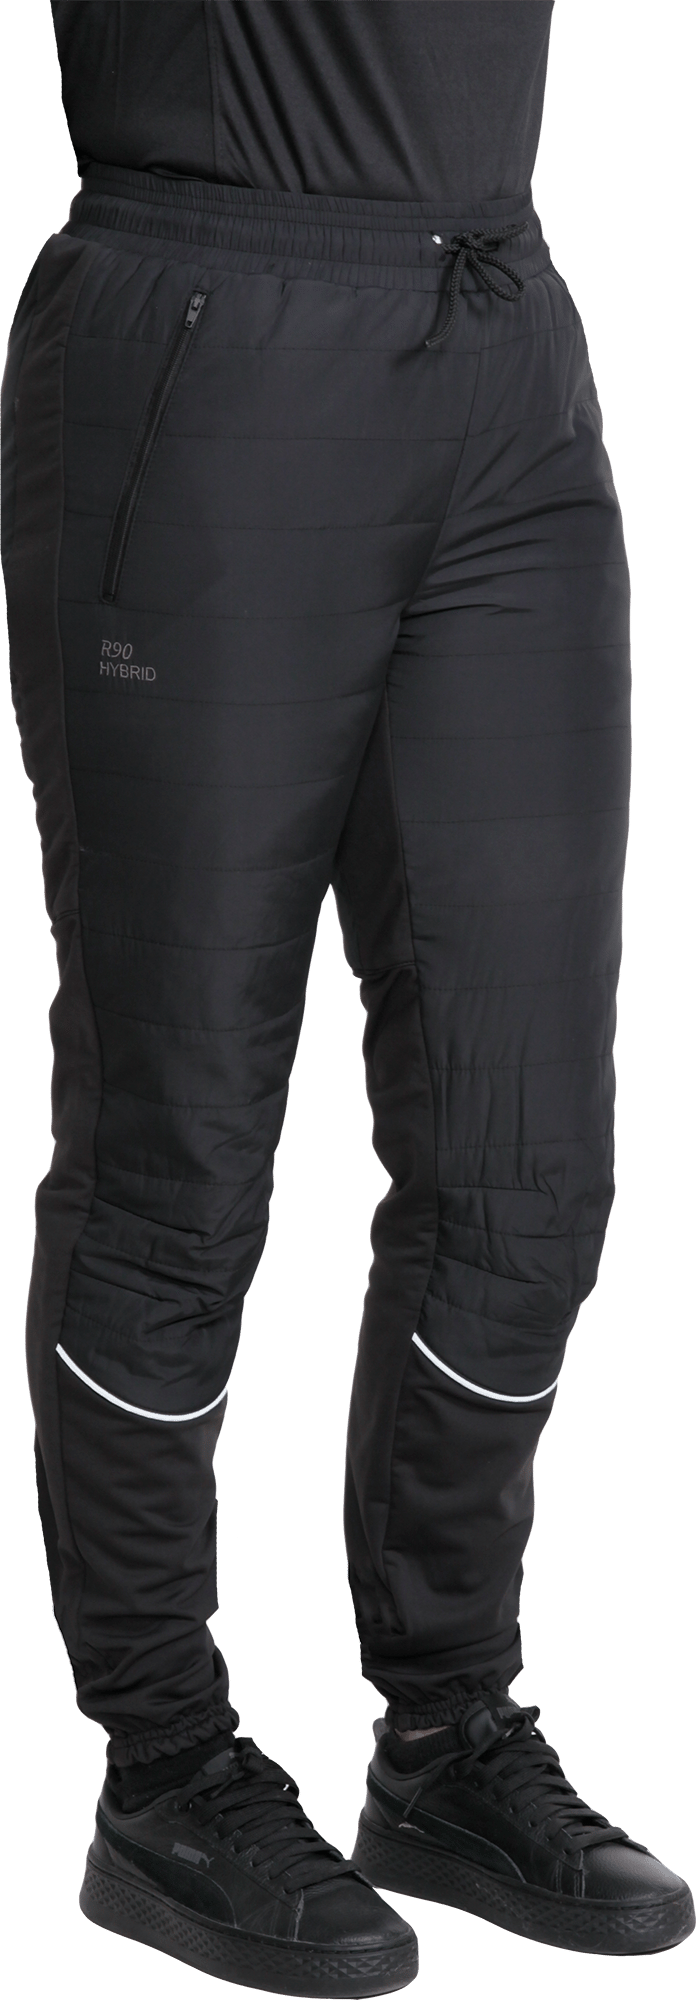 Women's R90 Hybrid Pants Black Dobsom